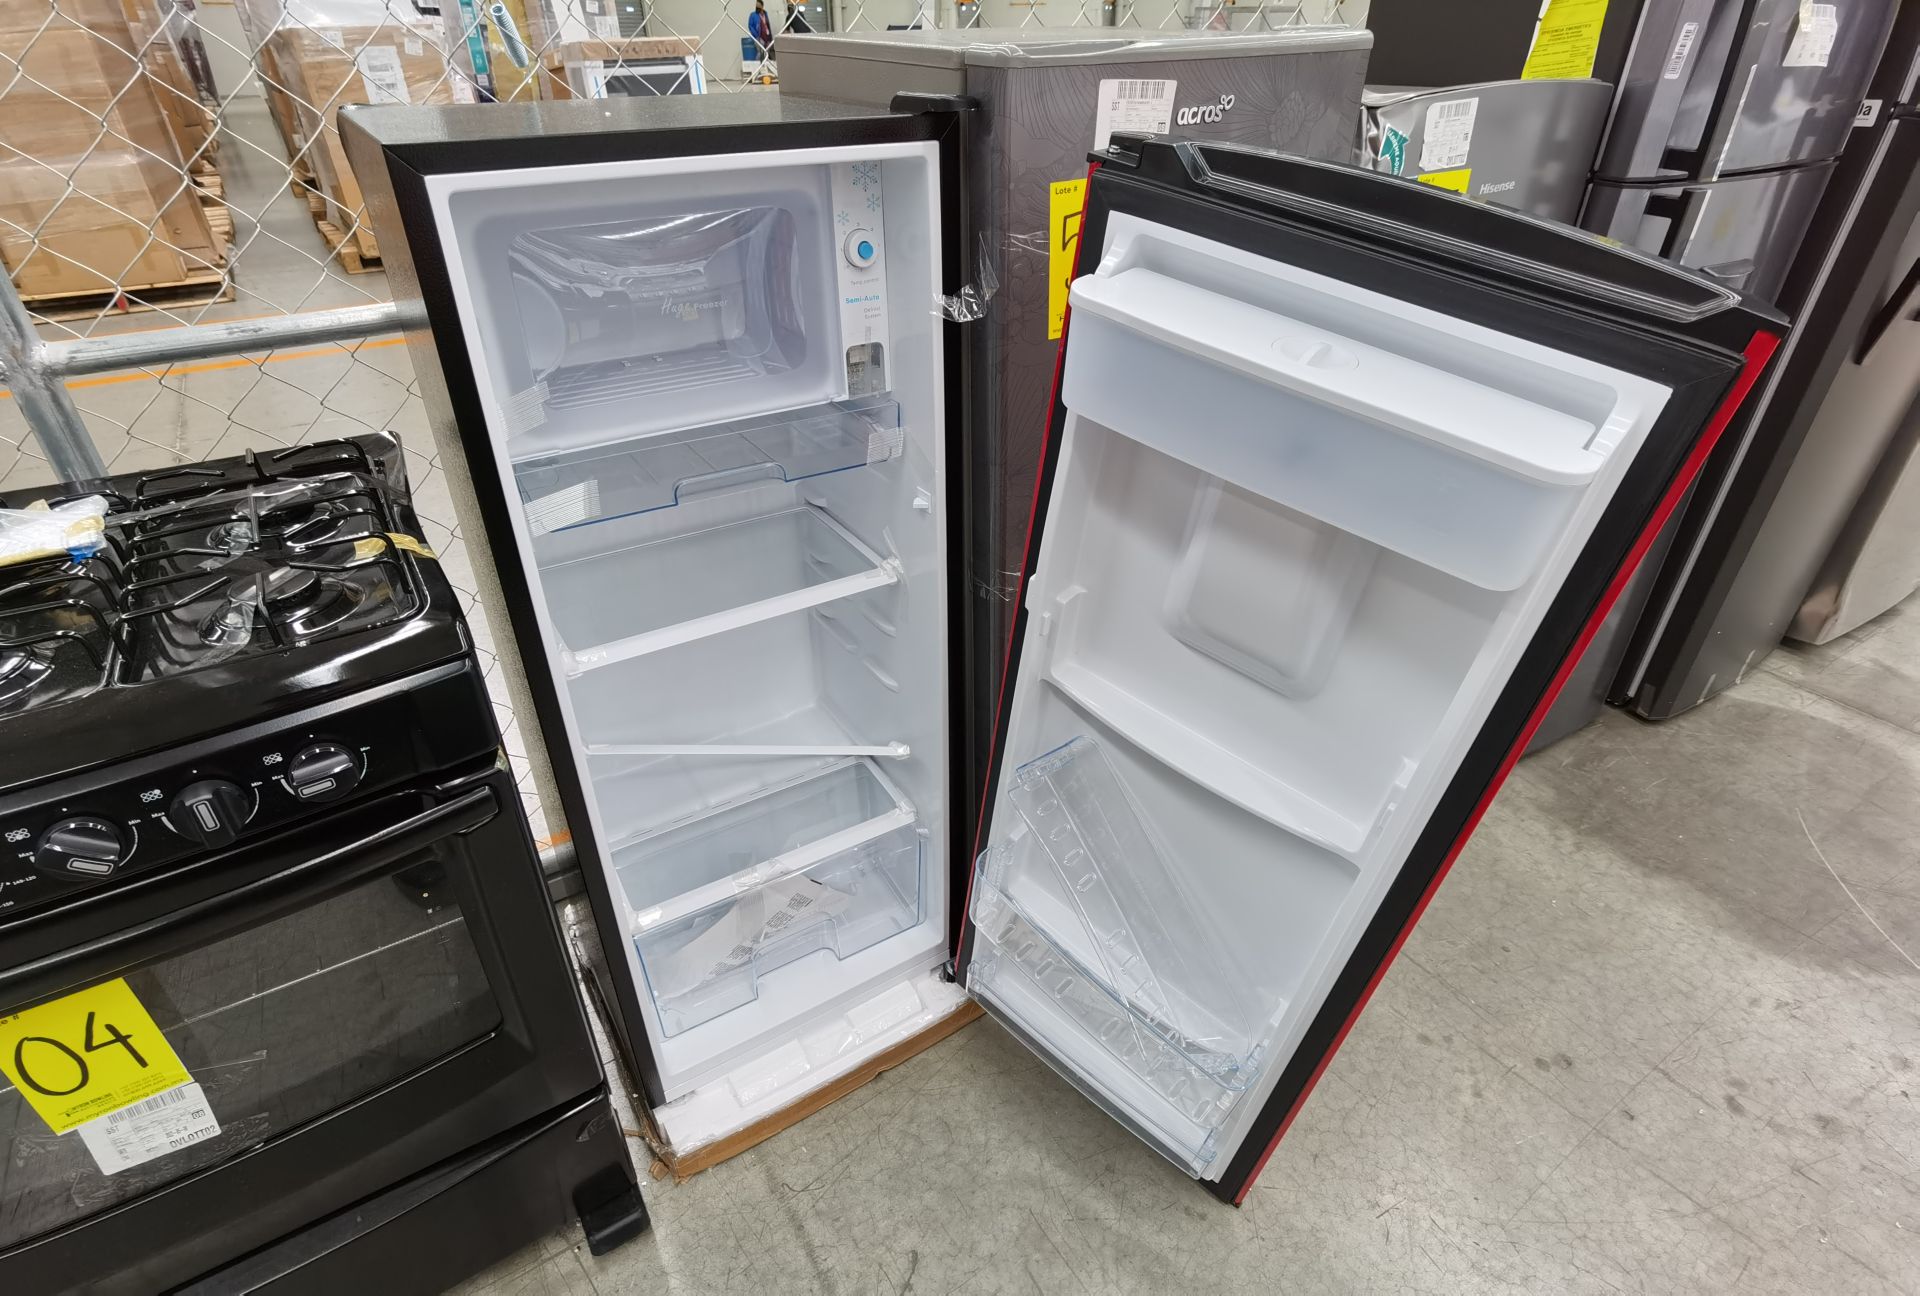 Lote de 2 Refrigeradores contiene: 1 Refrigerador Marca Acros - Image 5 of 6